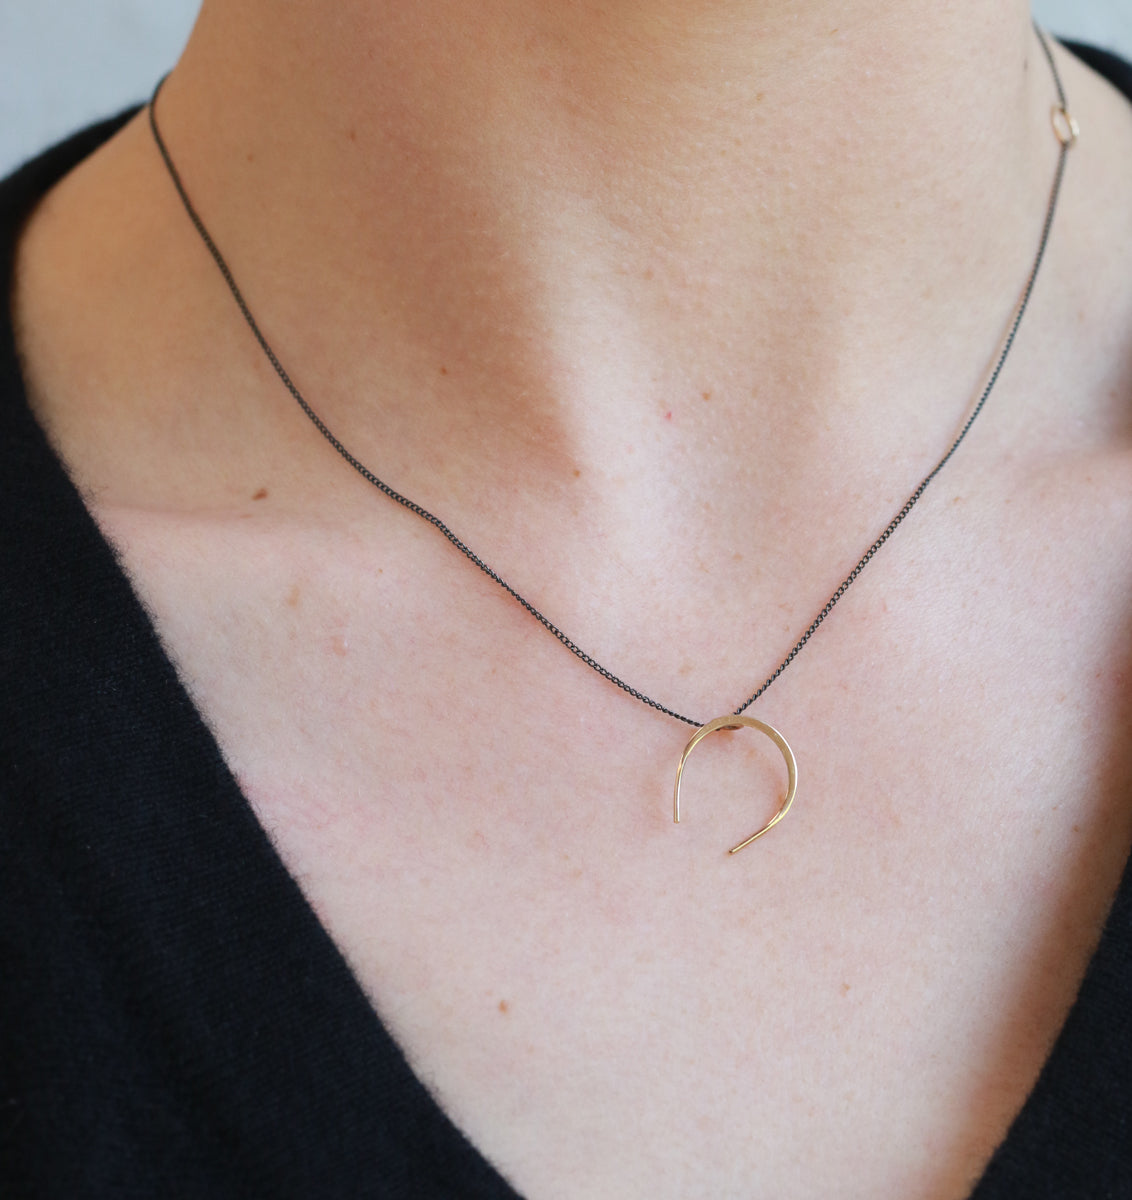 Horseshoe necklace - Melissa Joy Manning Jewelry